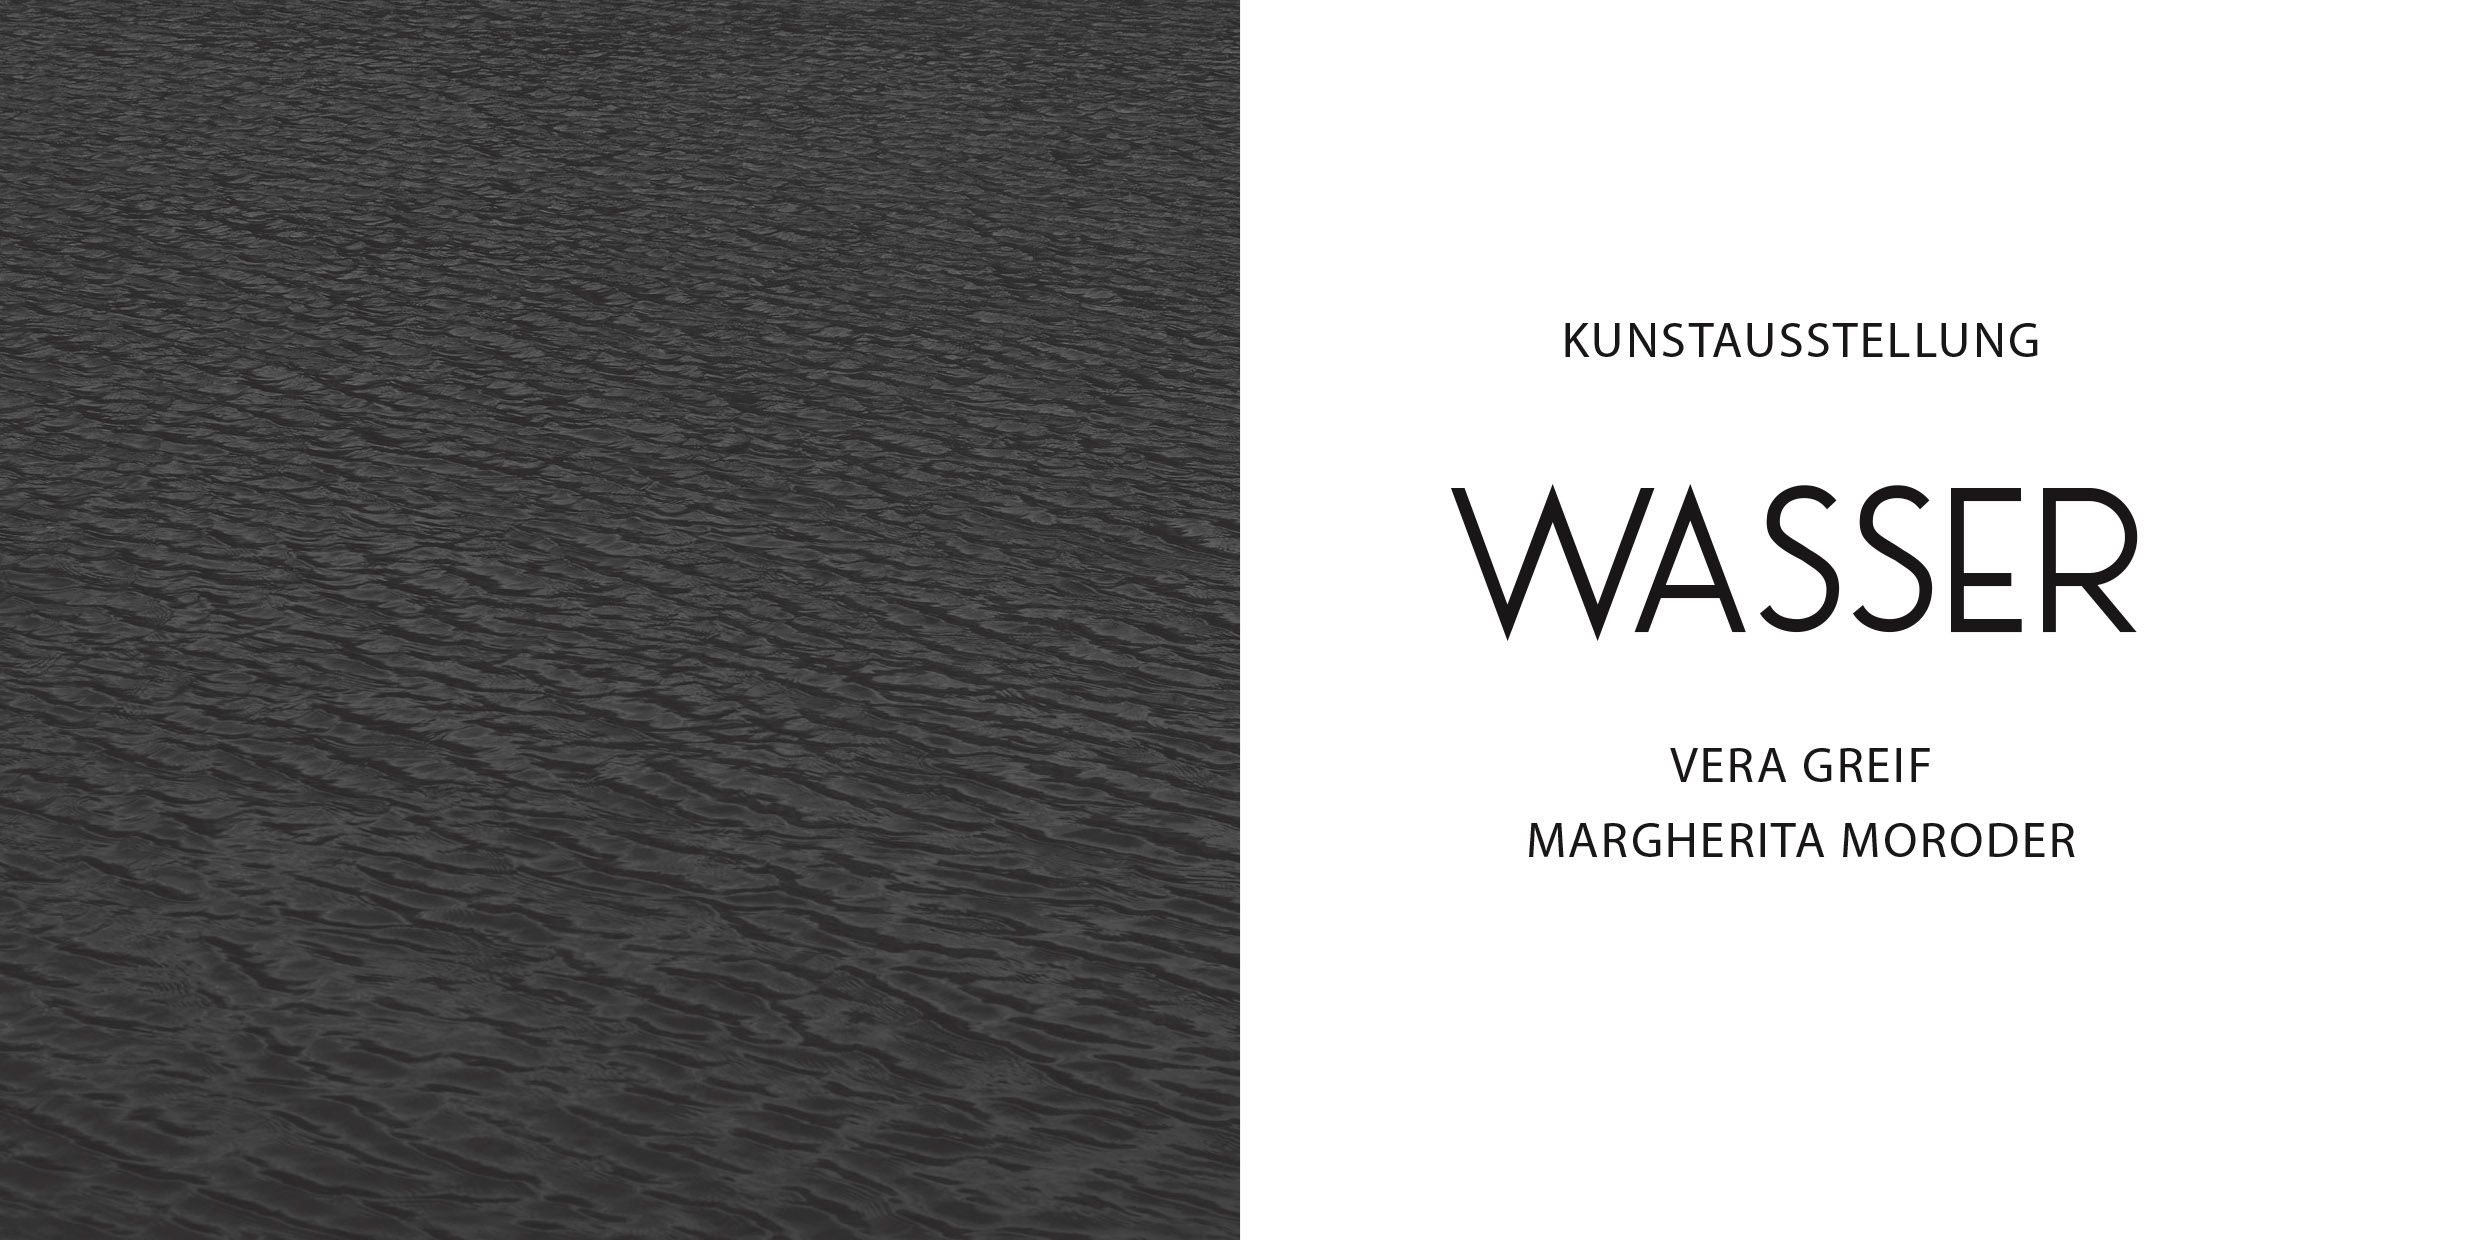 Einladungskarte Ausstellung "Wasser" im KOM Olching